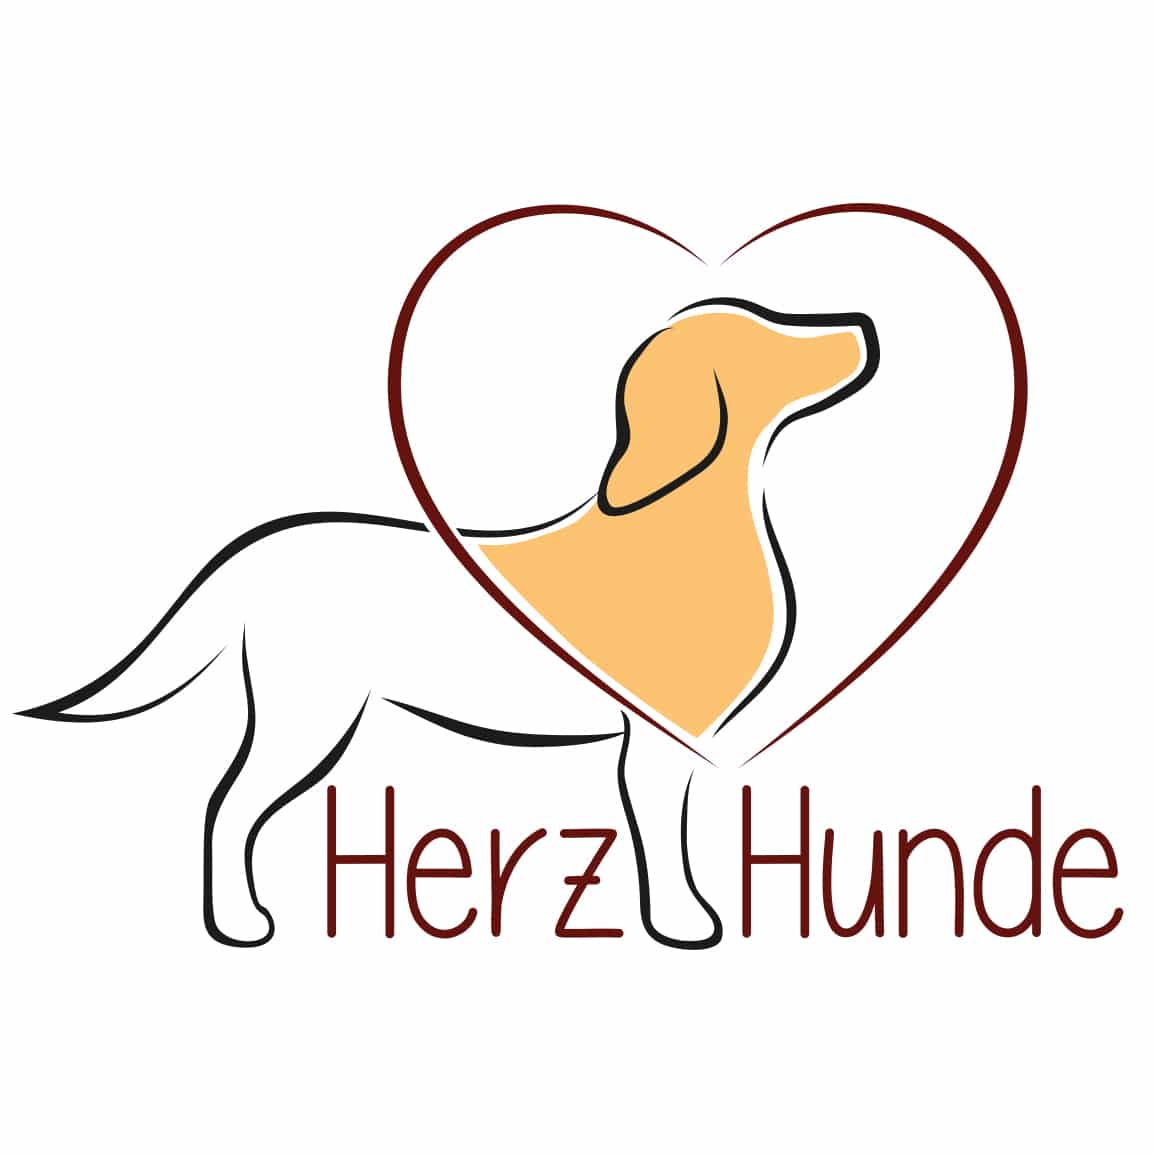 Logo Herzhunde , Hundelogo